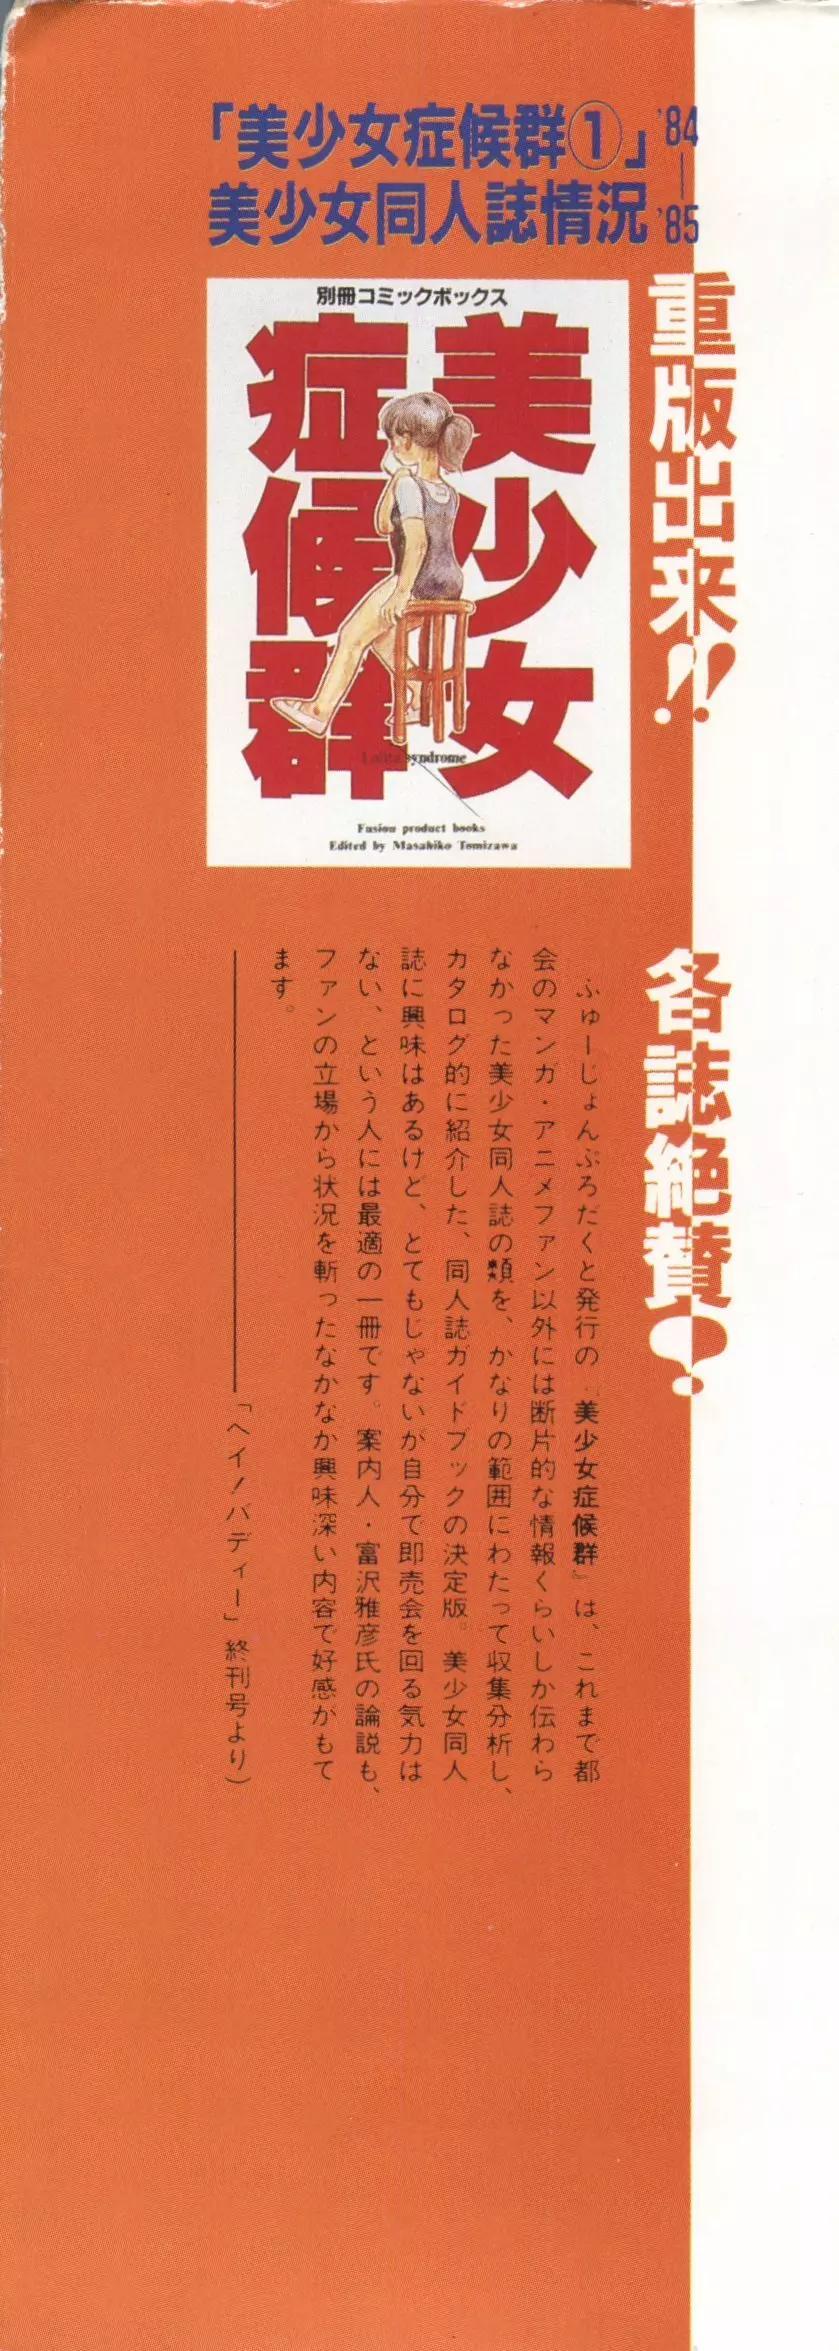 [Anthology] 美少女症候群(2) Lolita syndrome (よろず) 3ページ